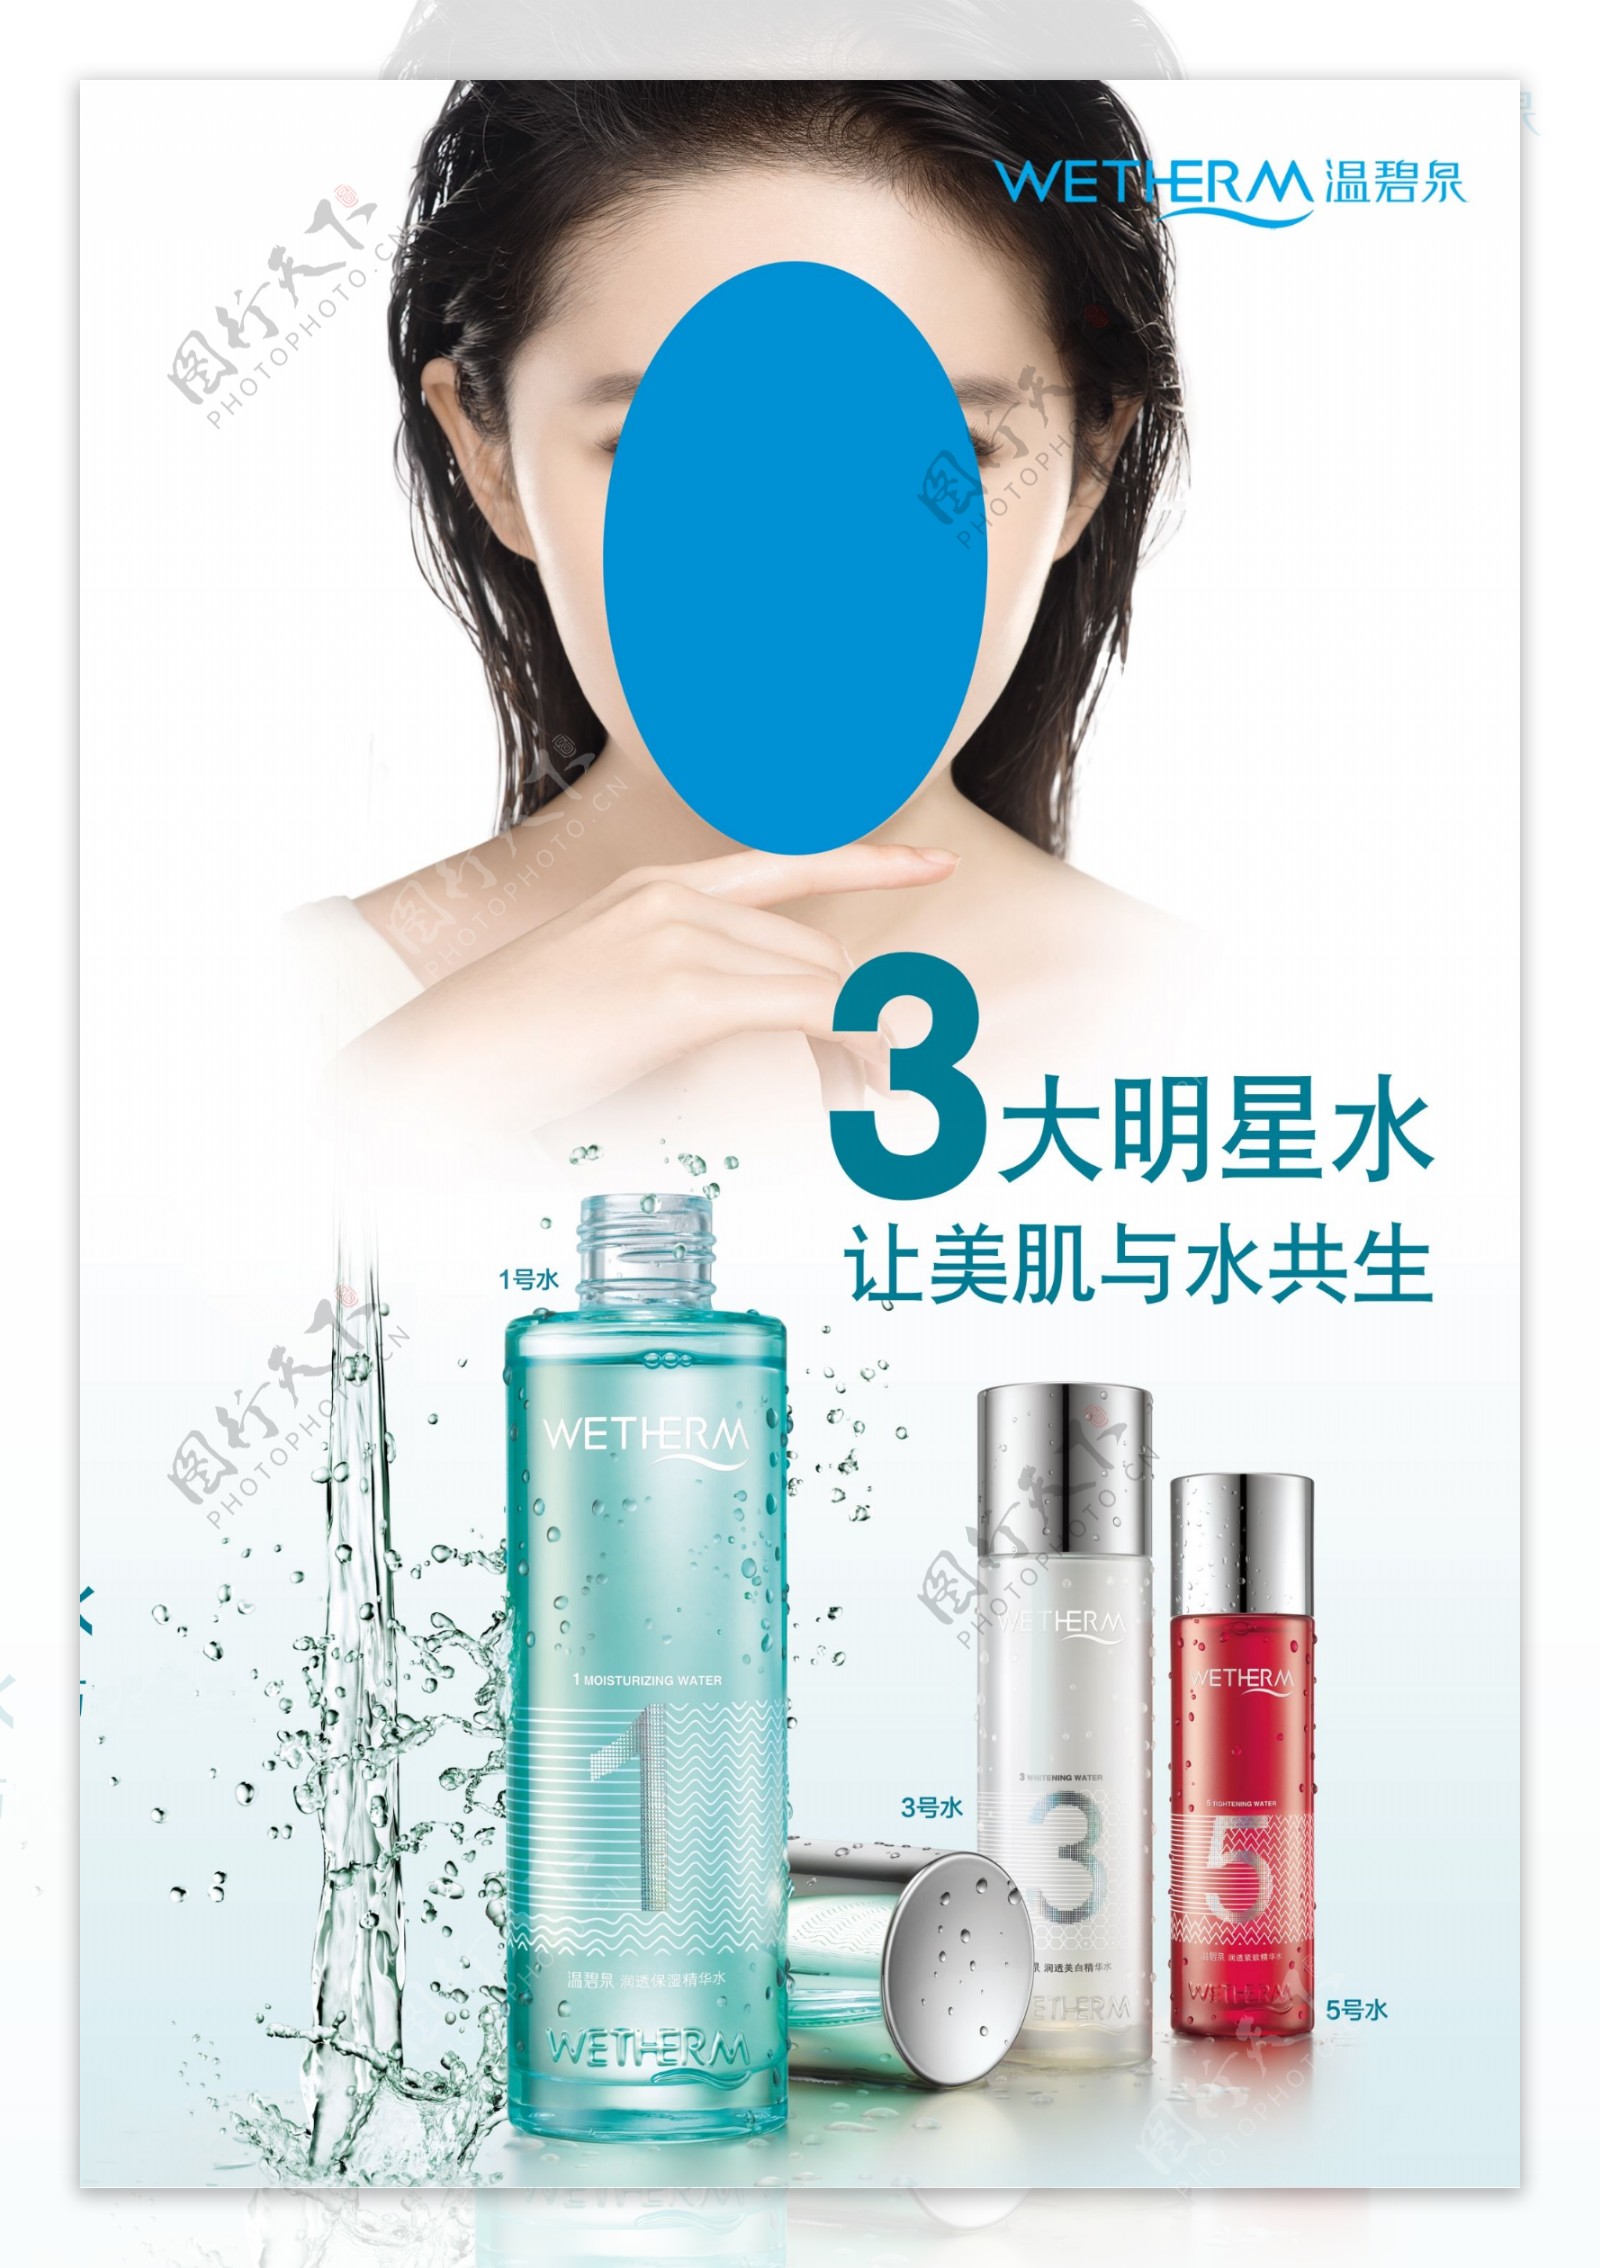 温碧泉化妆品广告